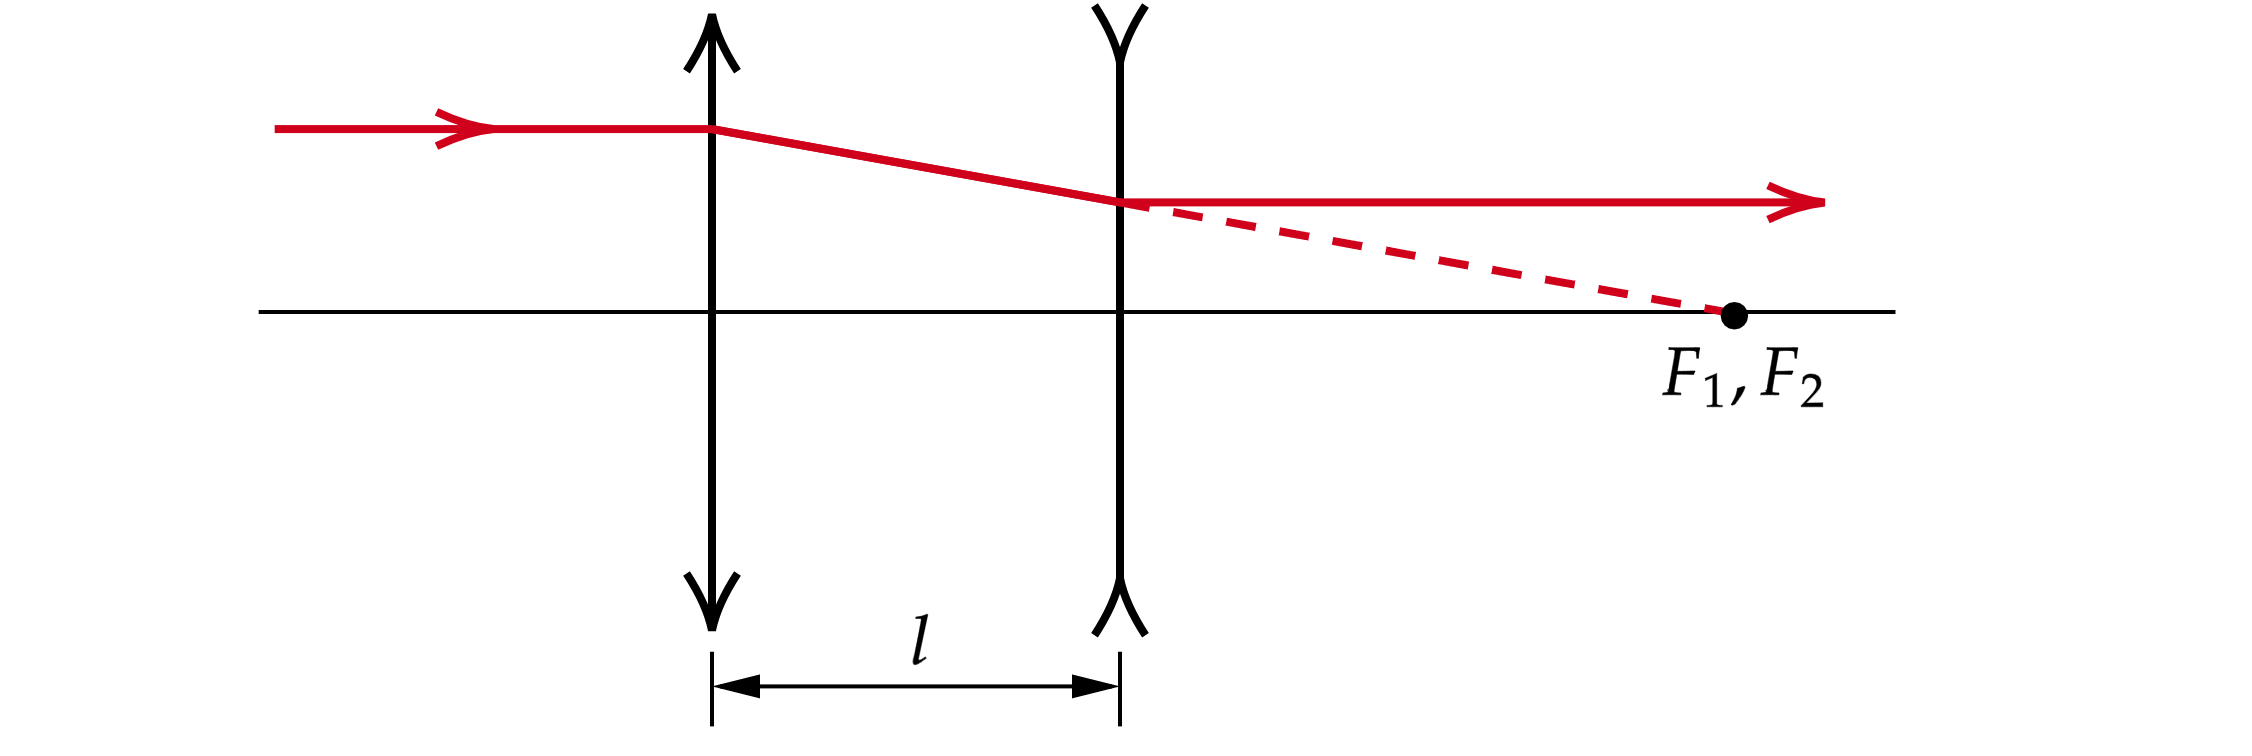 Фокусное расстояние рассеивающей линзы равно 12.5